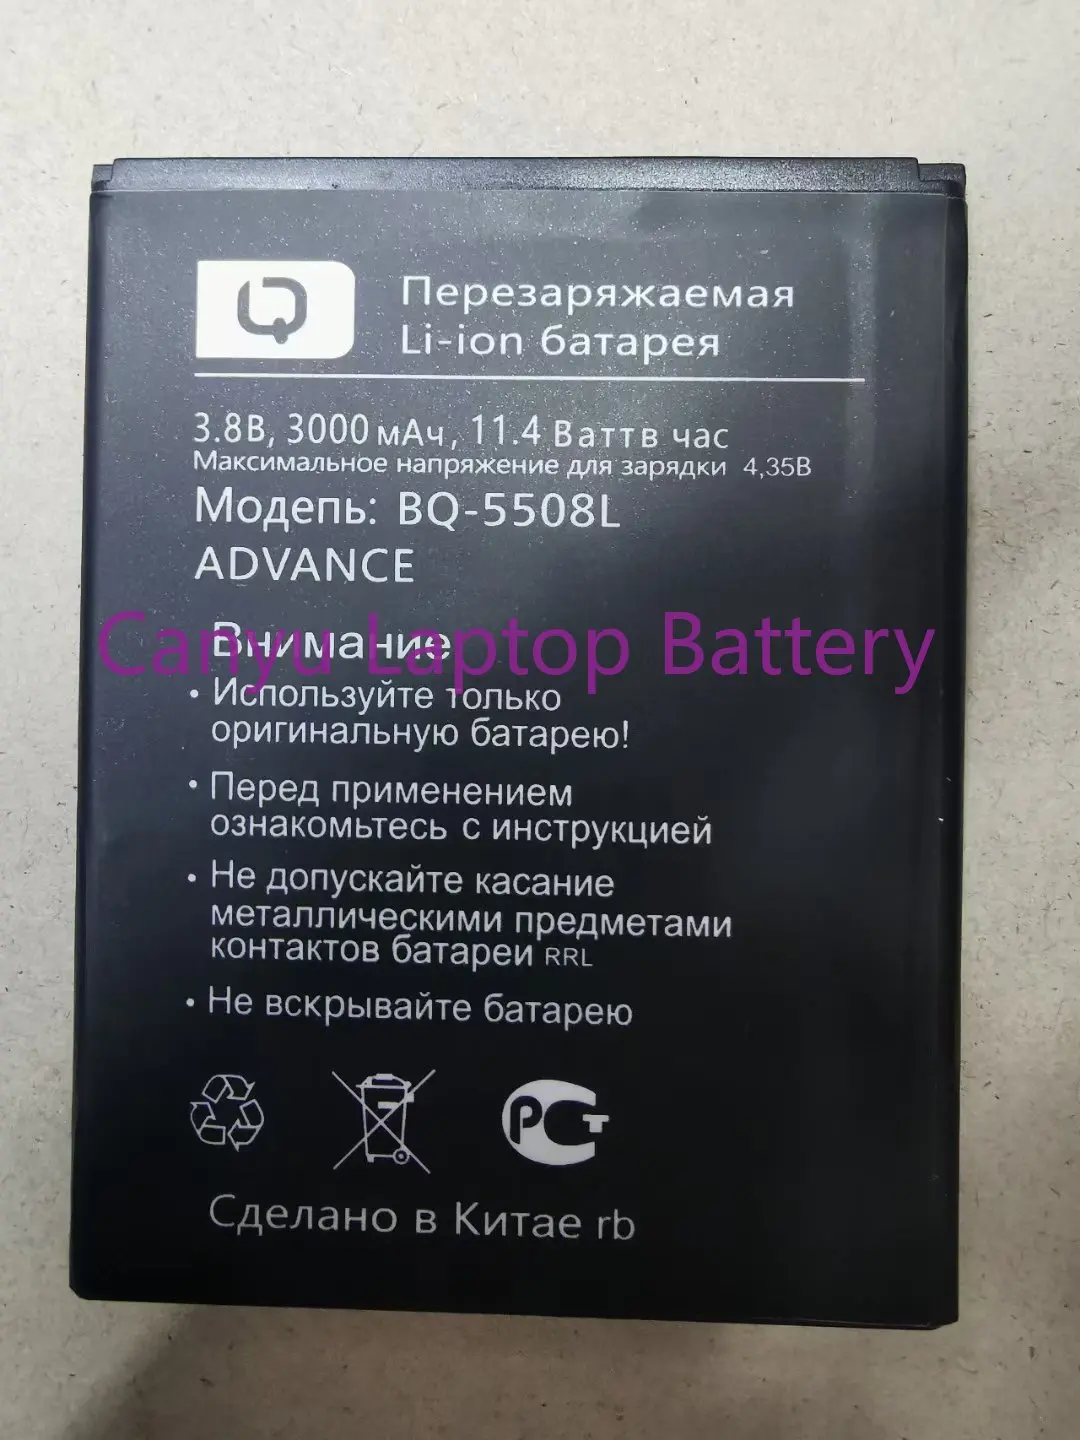 

2500mAh BQ-5591 Battery For BQS 5044 BQ-5508L Next LTE BQ-5522 Next BQ-5500L Advance Mobile Phone In Stock High Quality